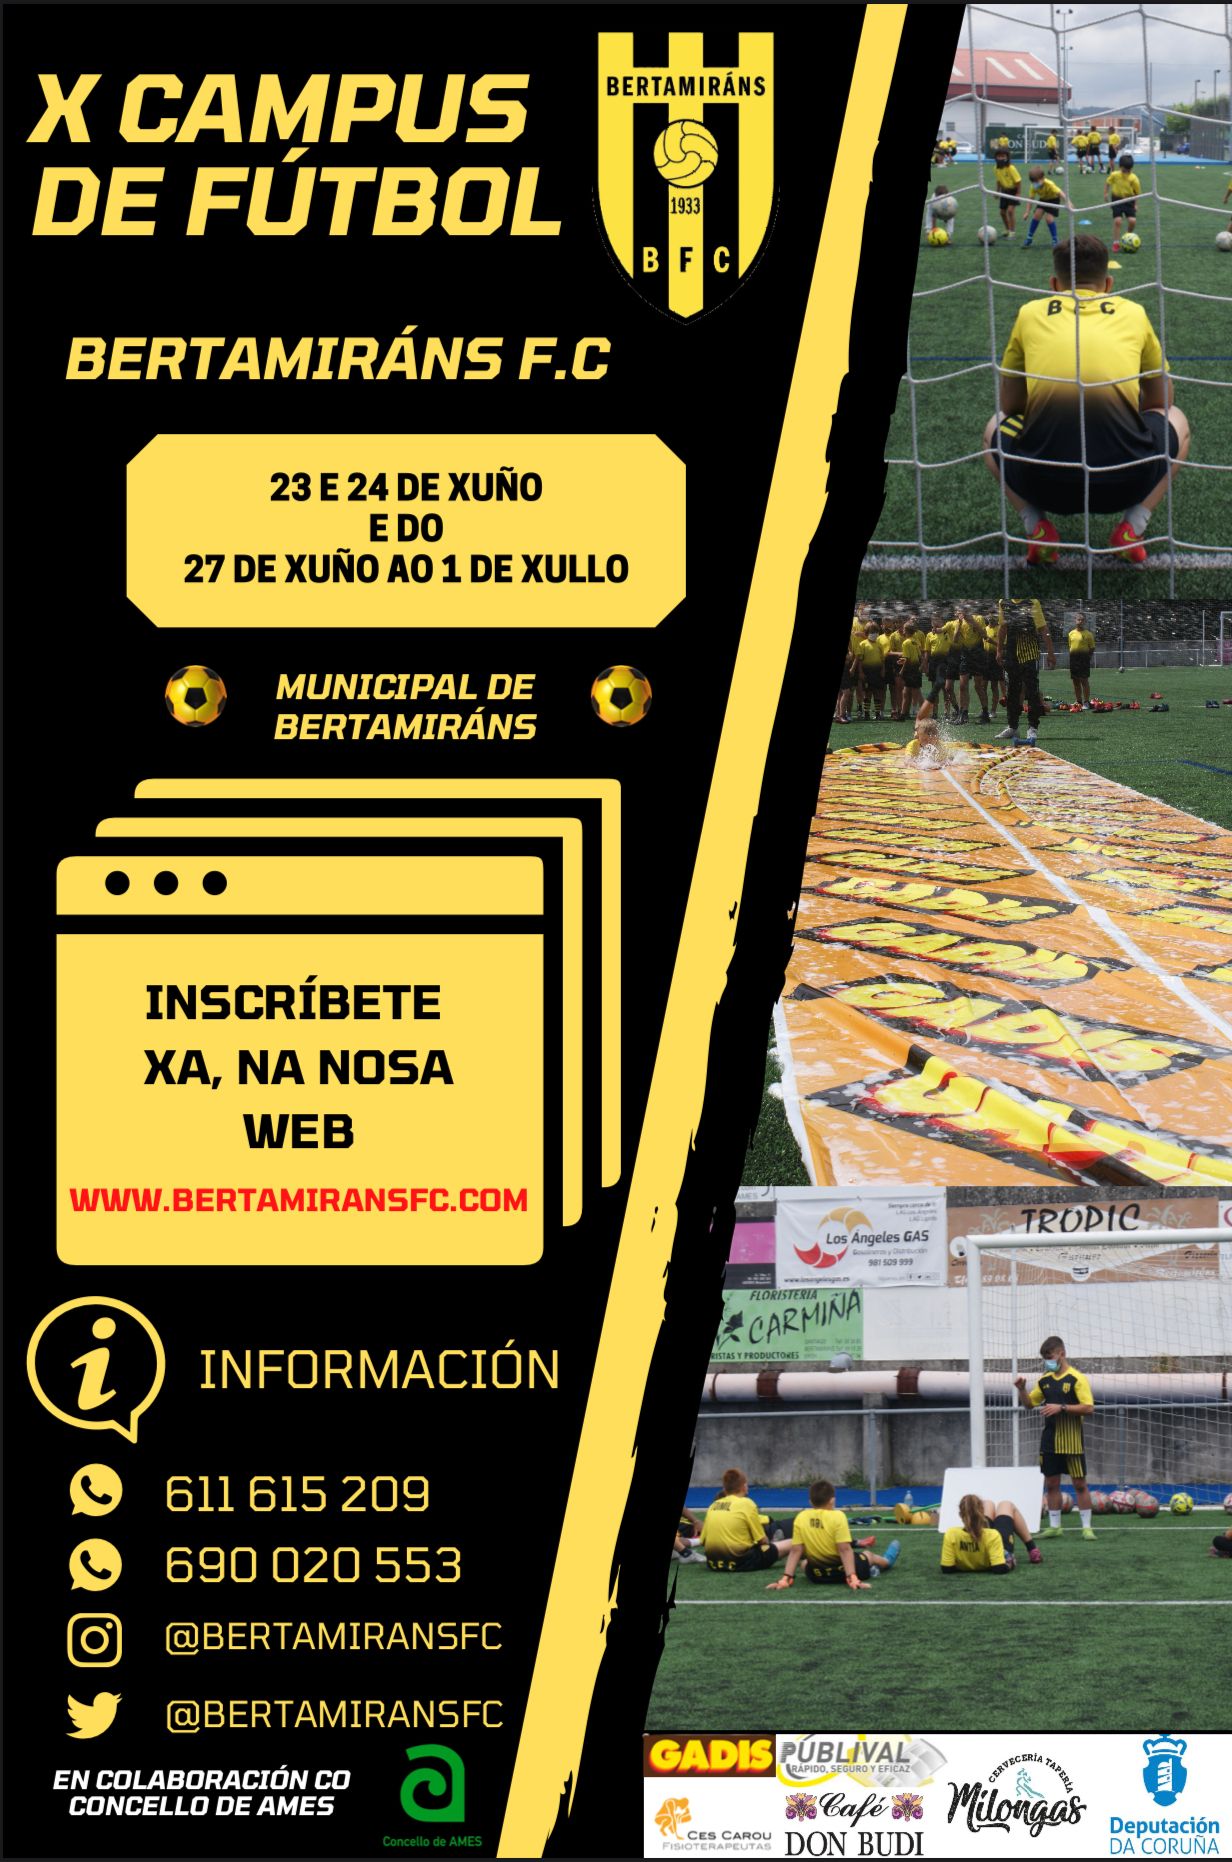 X Campus de Fútbol Bertamiráns F.C.